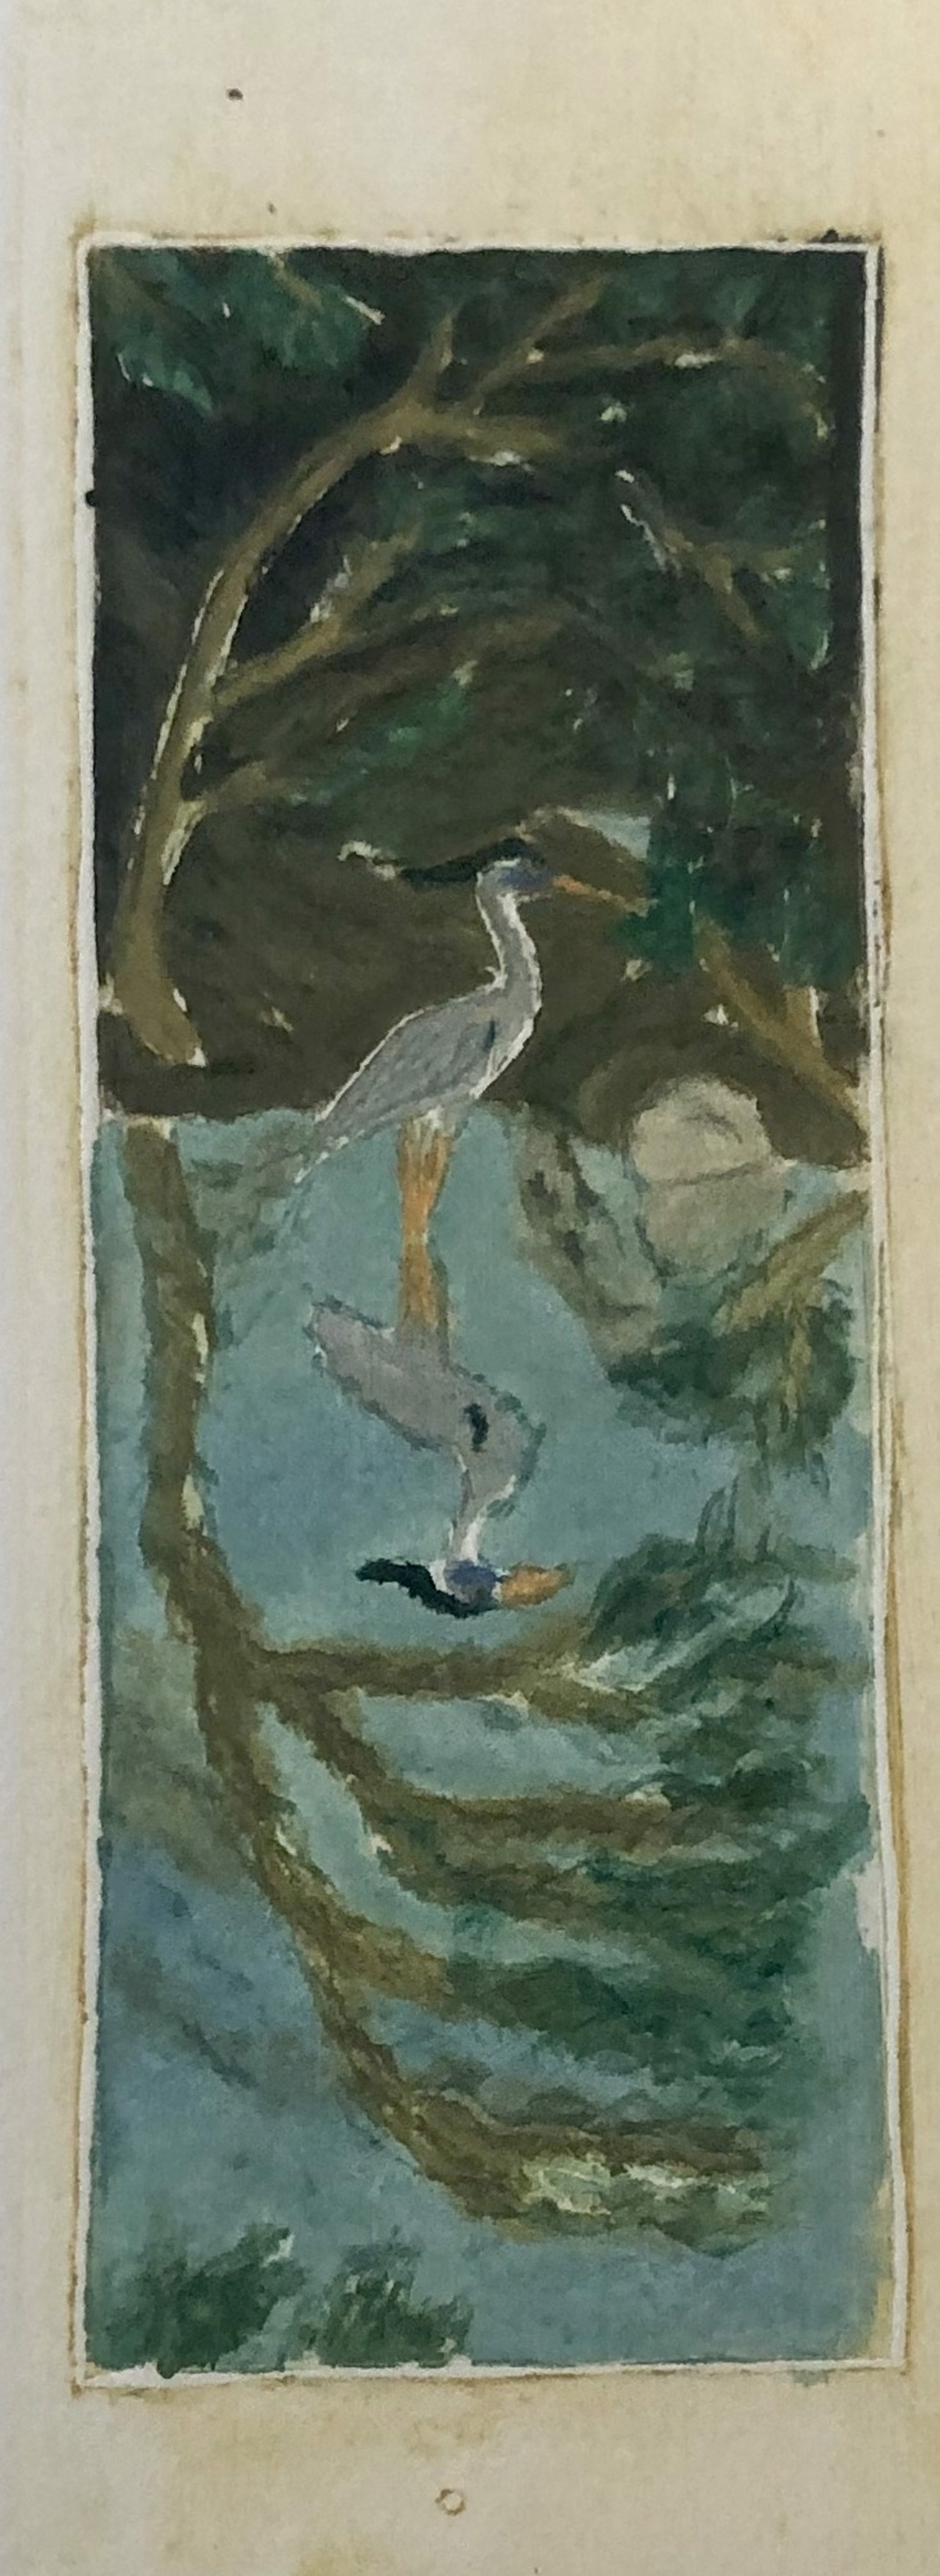 Heron on Long Board by David Hefner